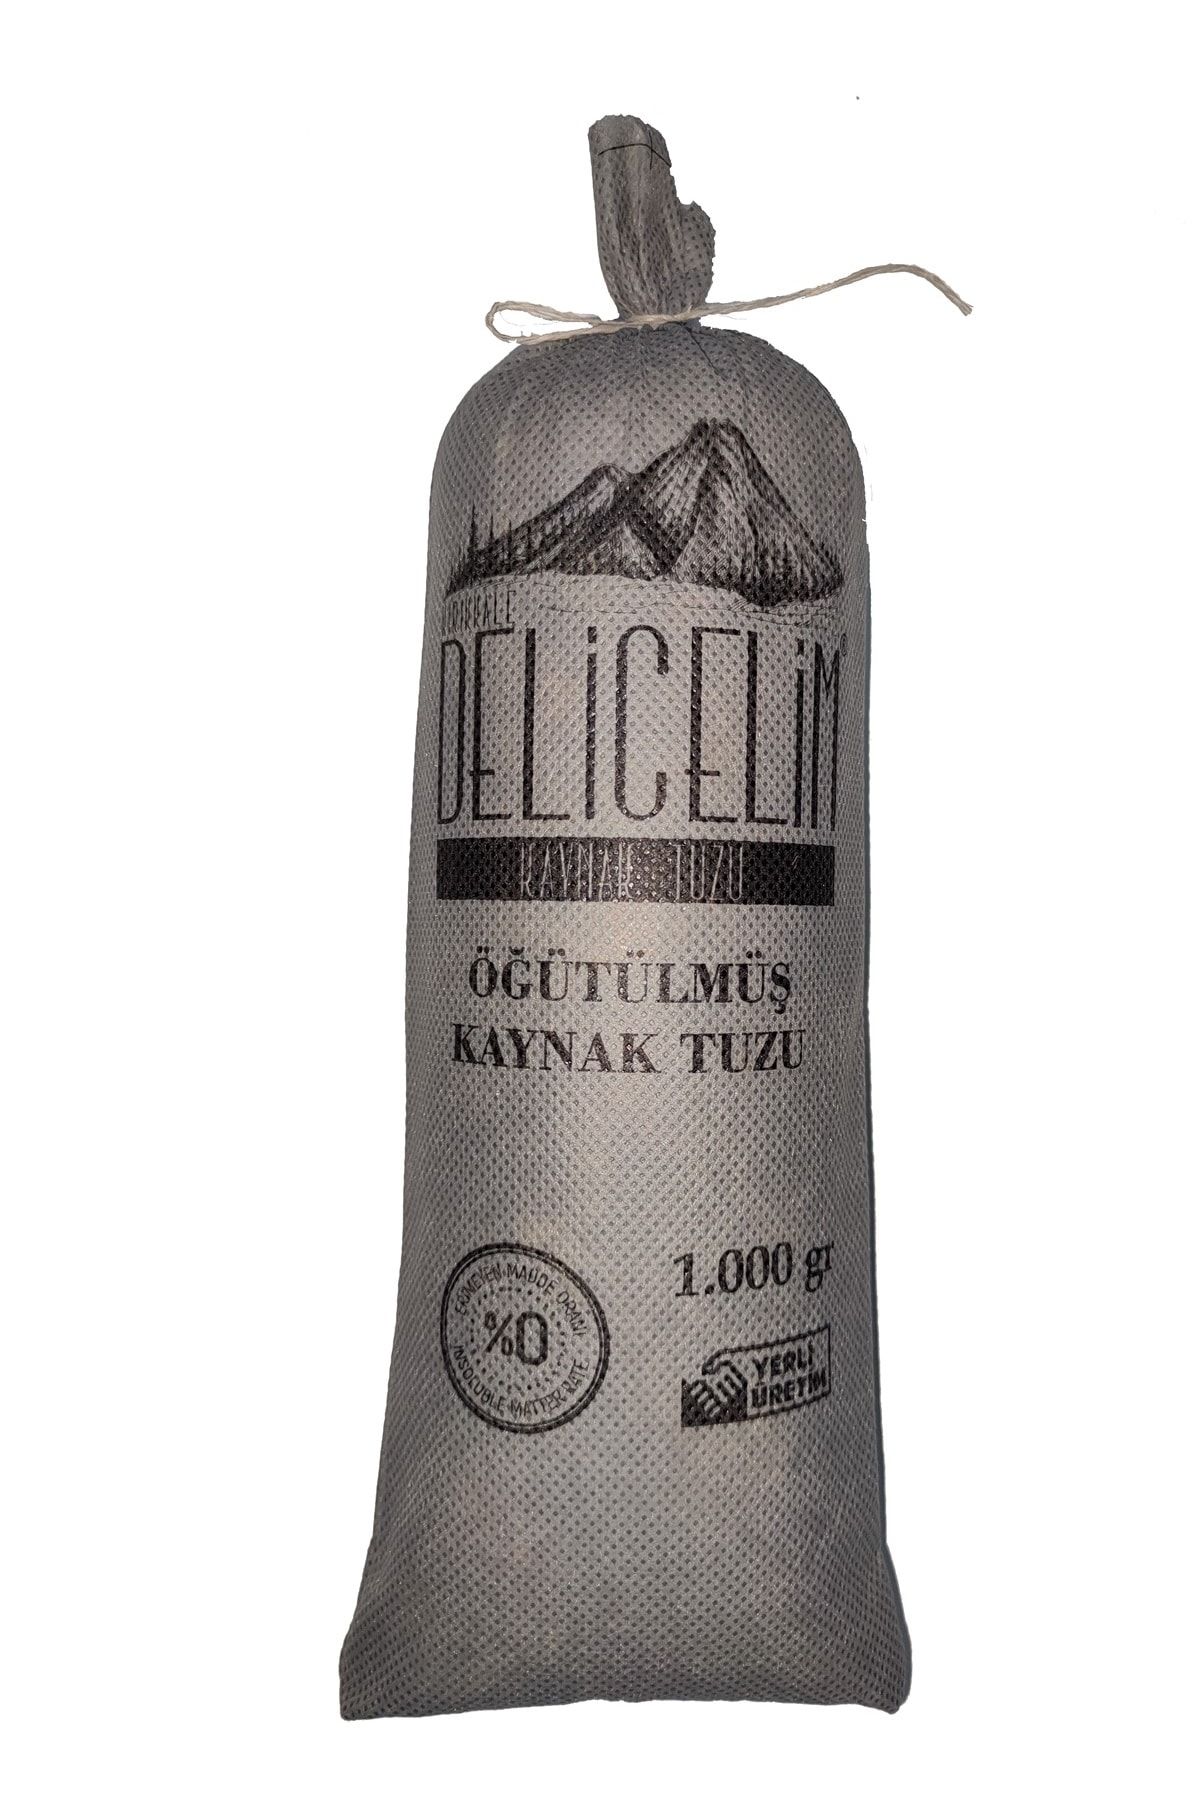 DELİCE Kırıkkale Delice Doğal Kaynak Tuzu Öğütülmüş Sofra Tuzu 1000GR